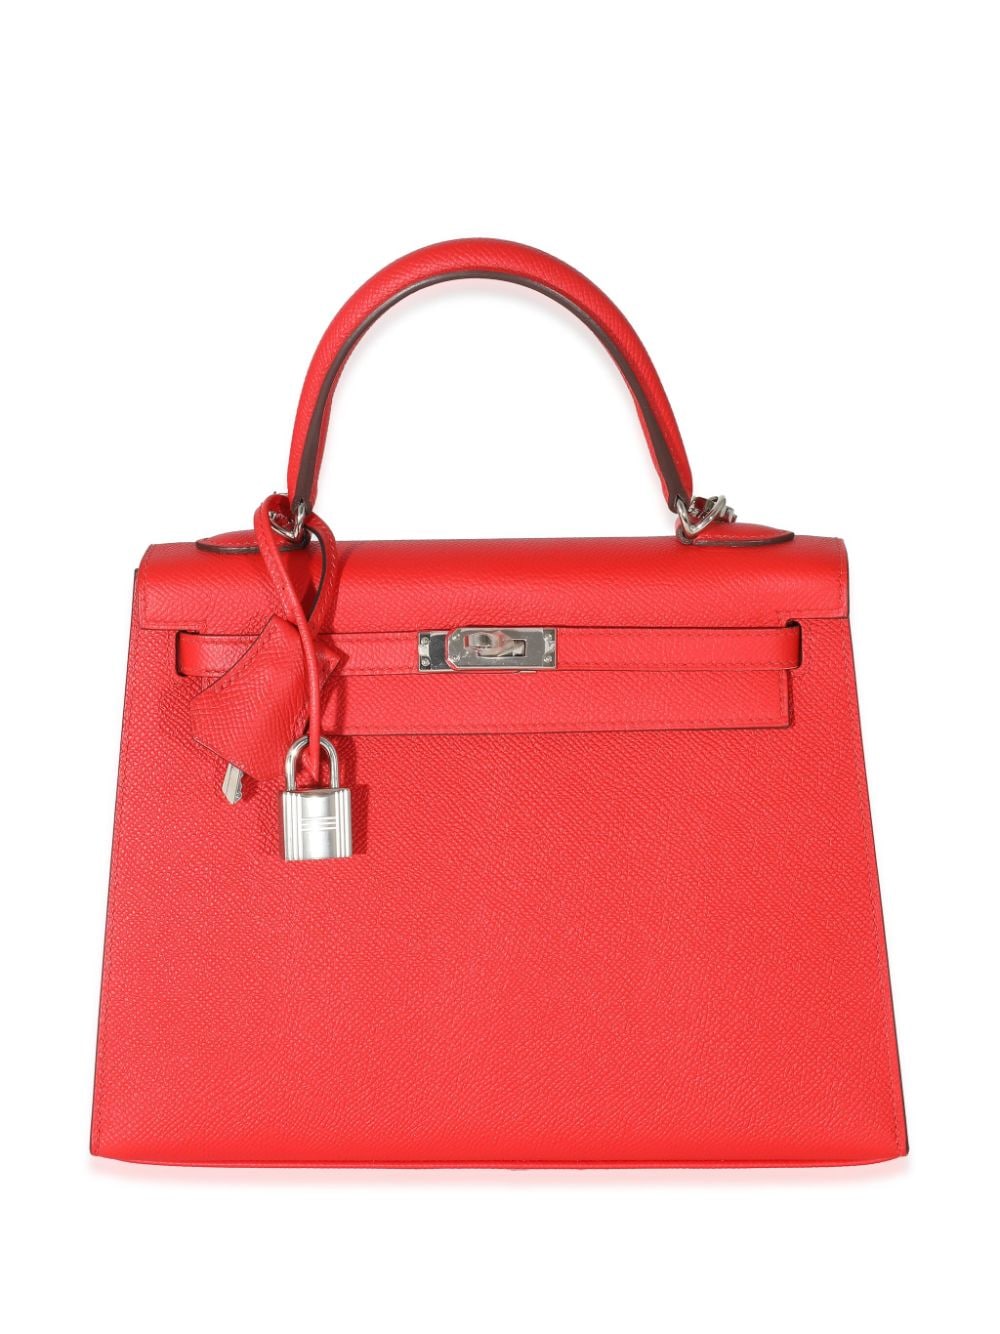 Hermès Pre-Owned 2019 Kelly 25 Sellier two-way handbag - Red von Hermès Pre-Owned